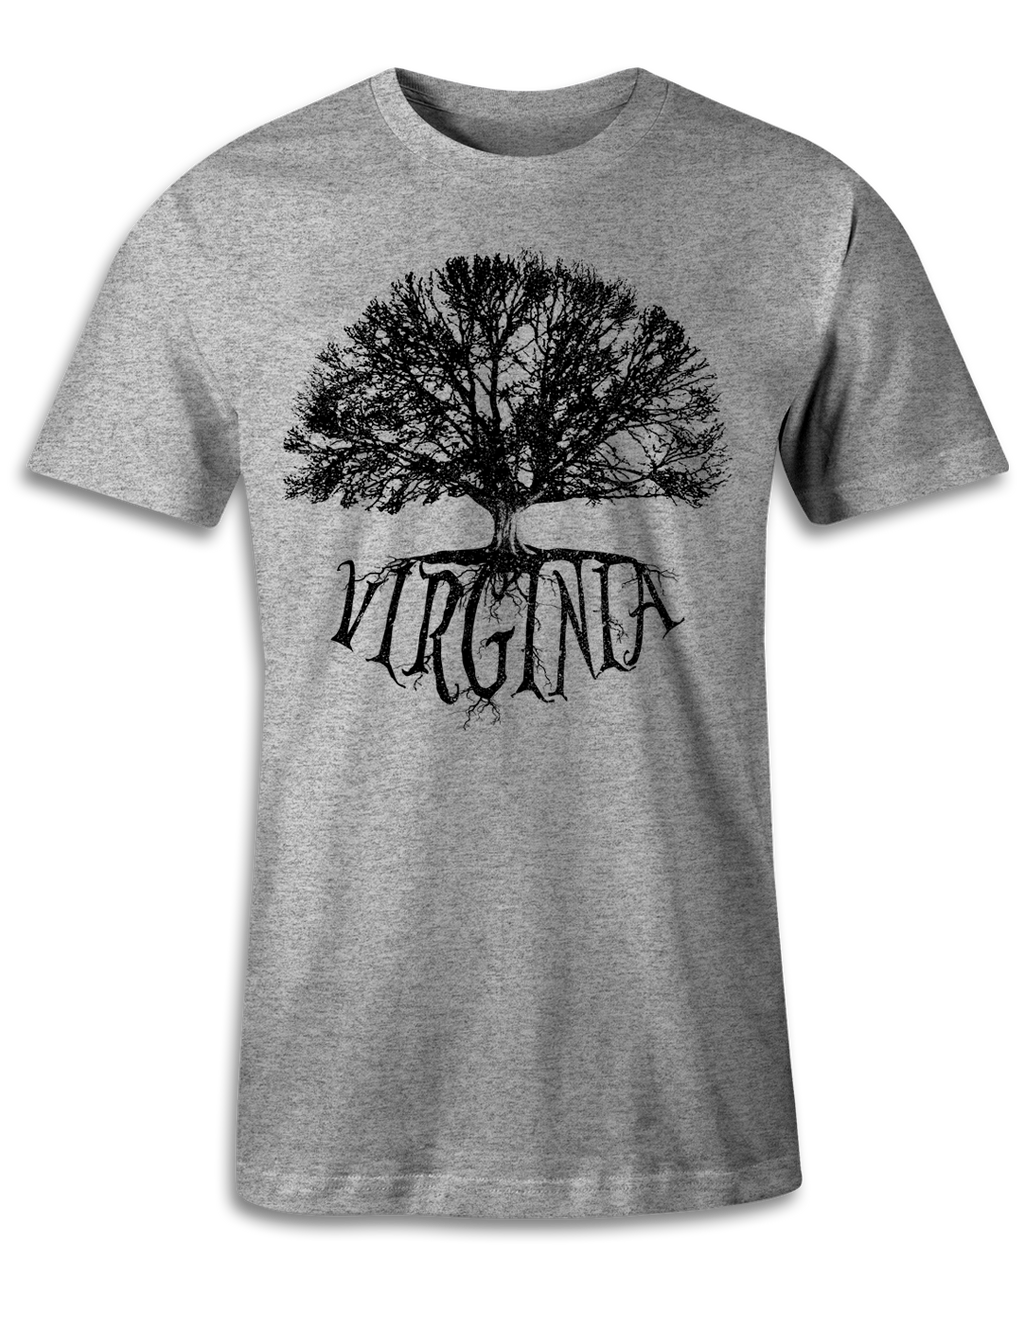 Virginia - Big Tree - Unisex Tee